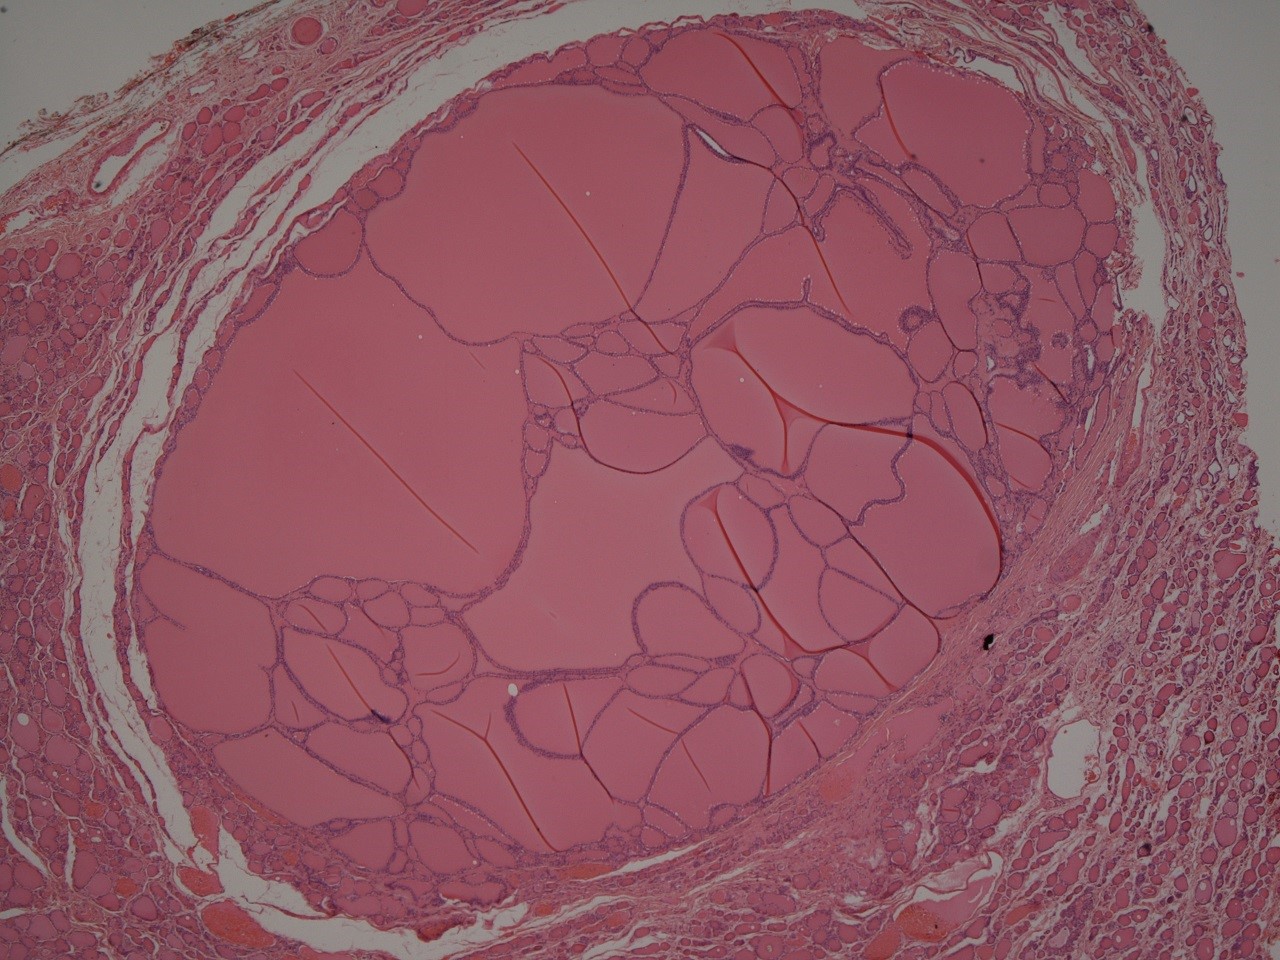 Histology of a multinodular goitre